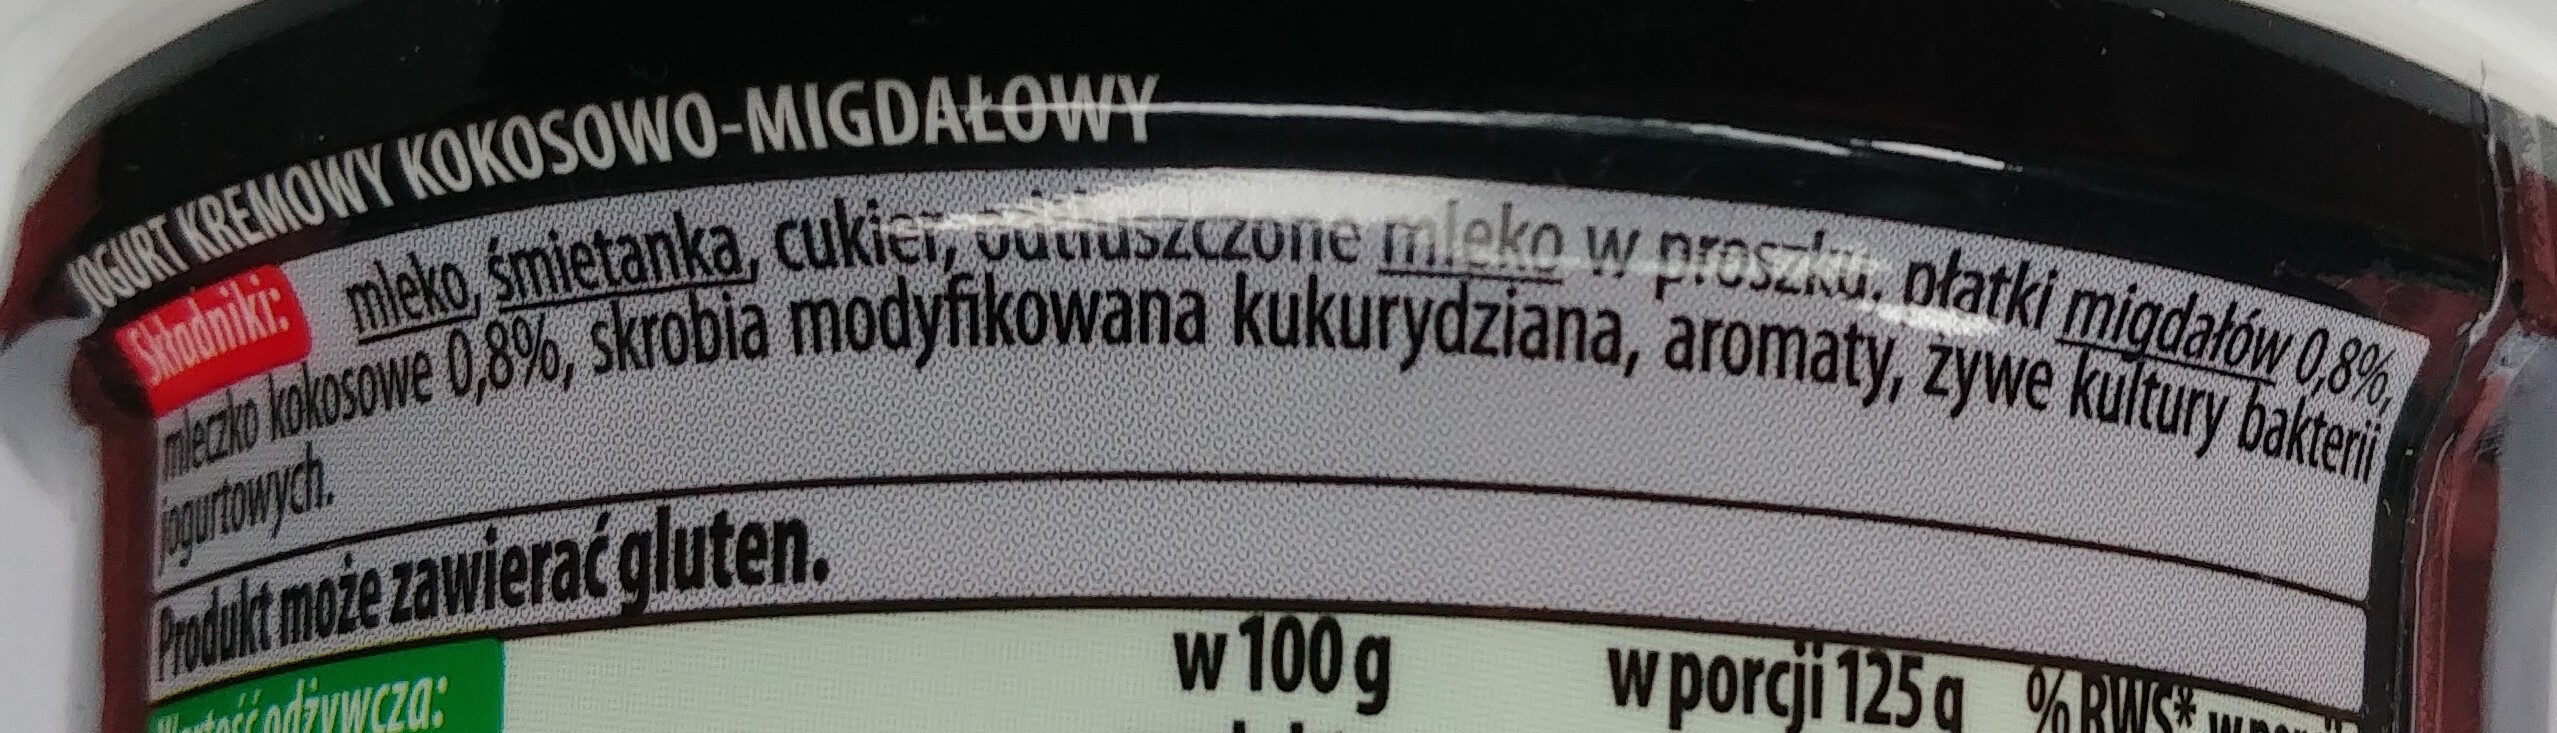 Jogurt kremowy kokosowy-migdały - Ingredients - pl